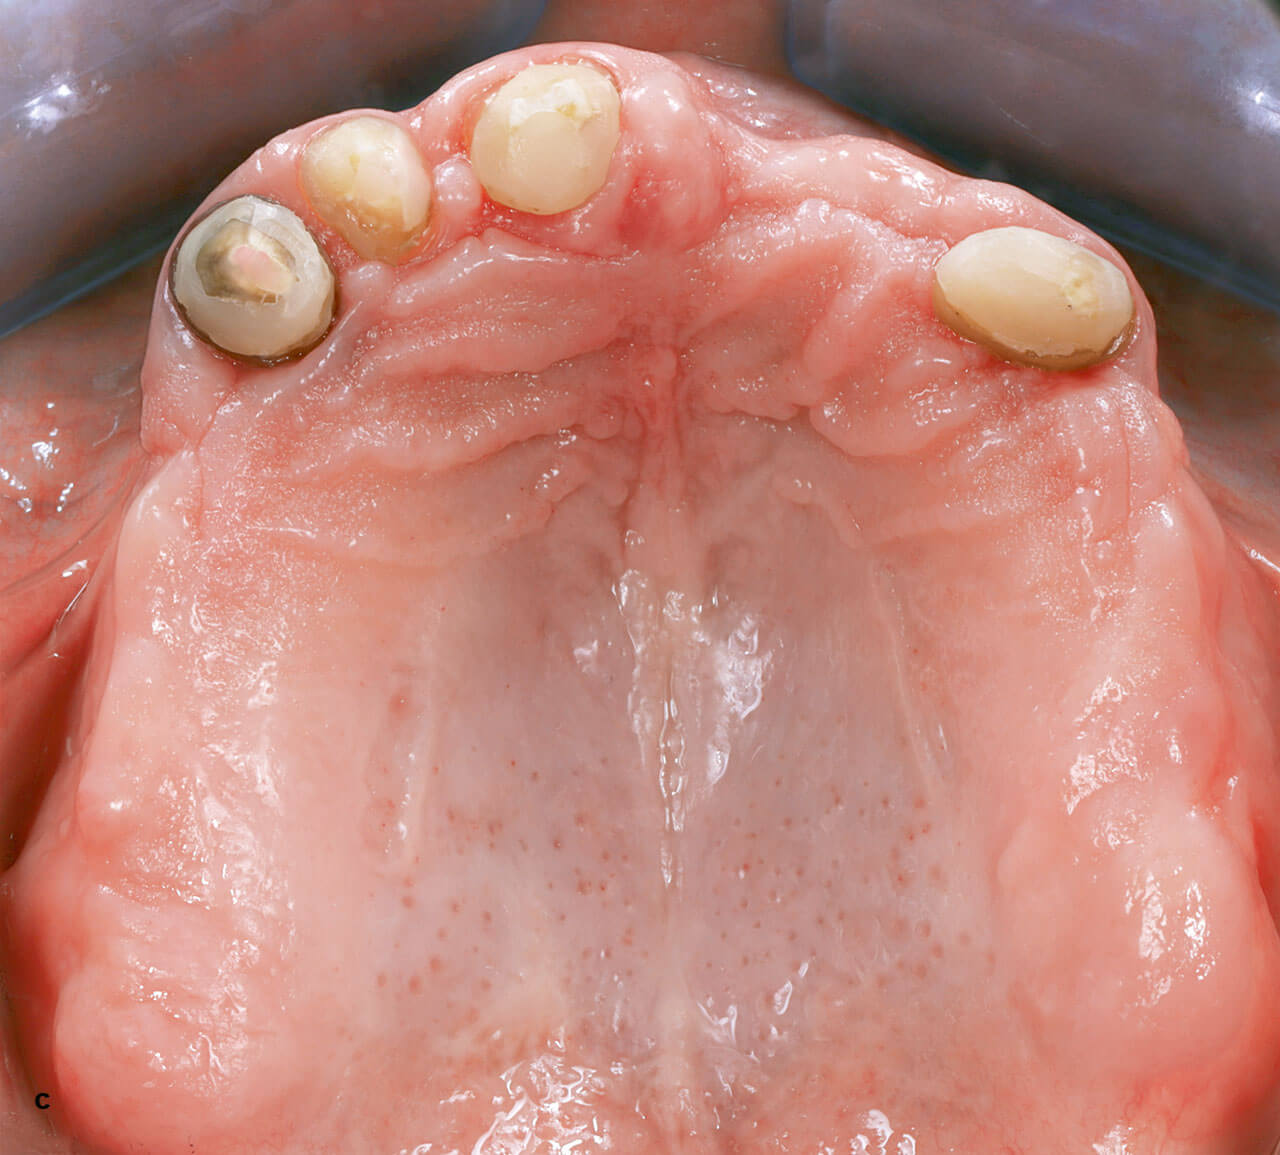 Abb. 6 c und d Nach Wurzelkanalbehandlung und Kürzung der verbleibenden Zähne wurde eine Immediatprothese abgegeben. Durch die verbesserte Passung der Prothesenbasis, der äquilibrierten Okklusion und der verbesserten Hygiene konnte eine Abheilung der entzündeten Schleimhäute erzielt werden.